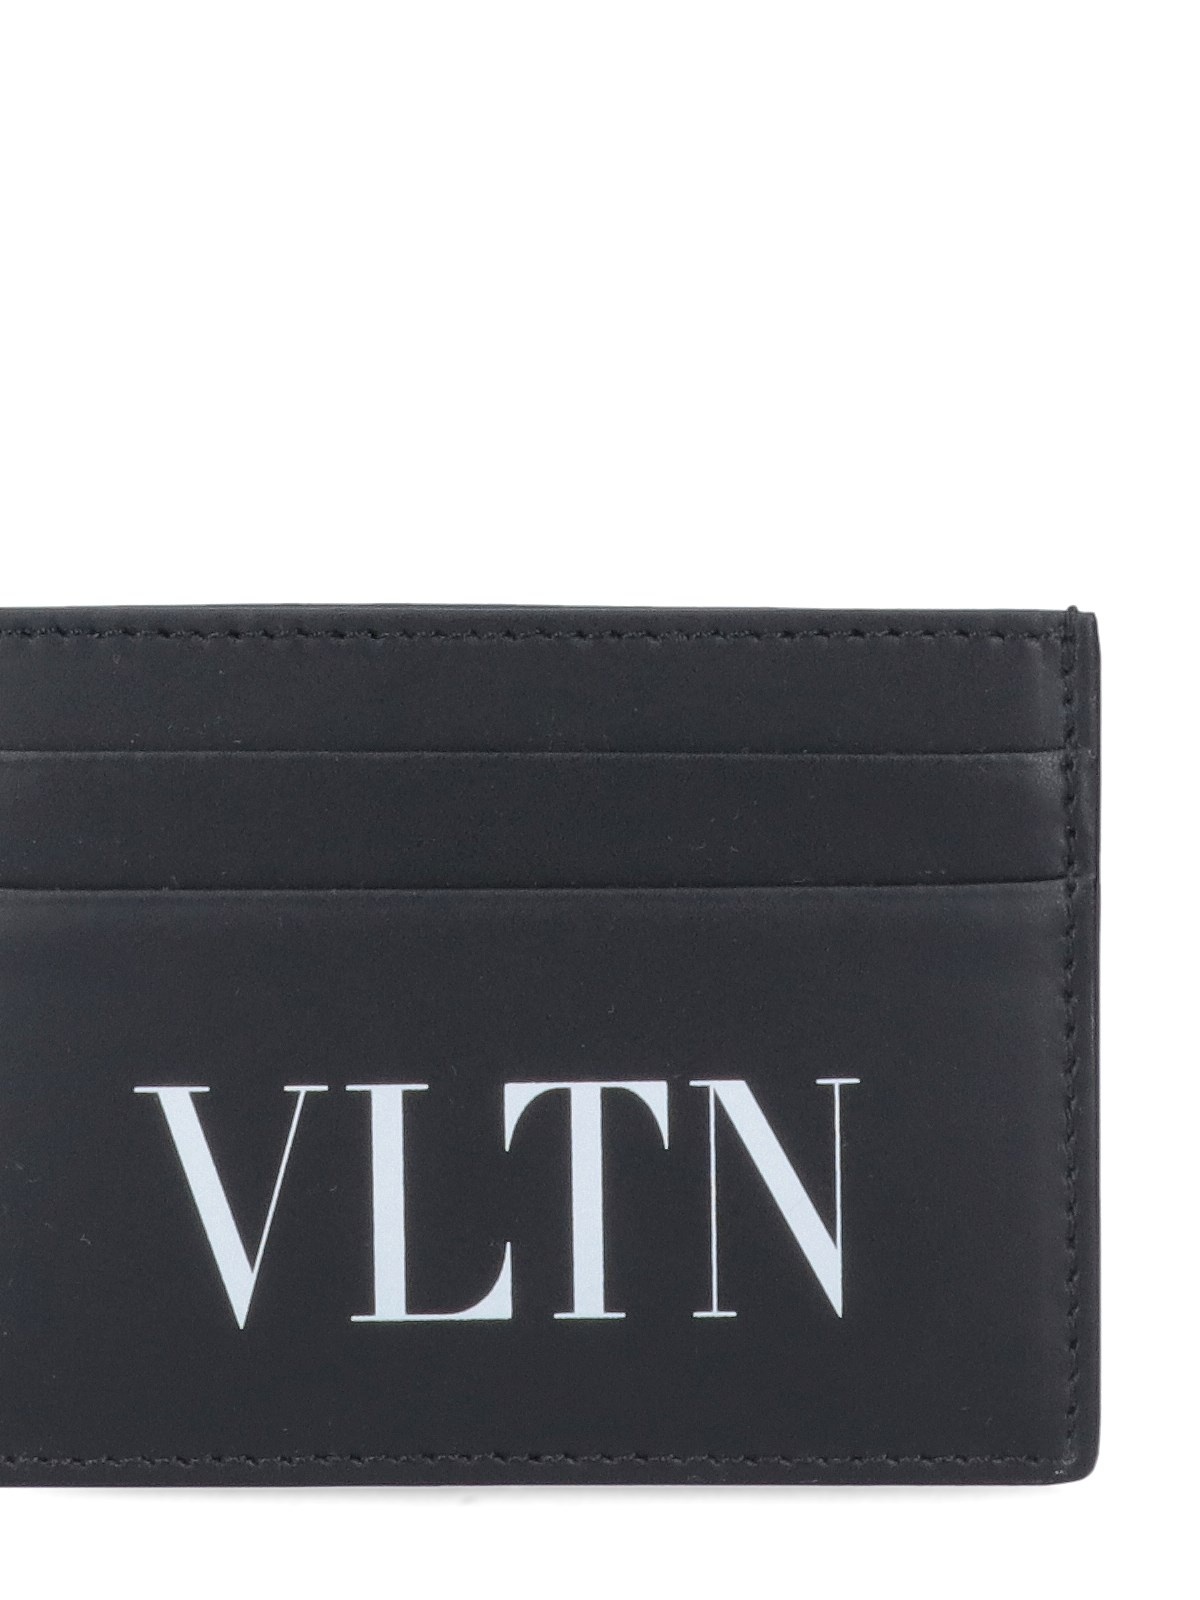 'VLTN' CARD HOLDER - 3